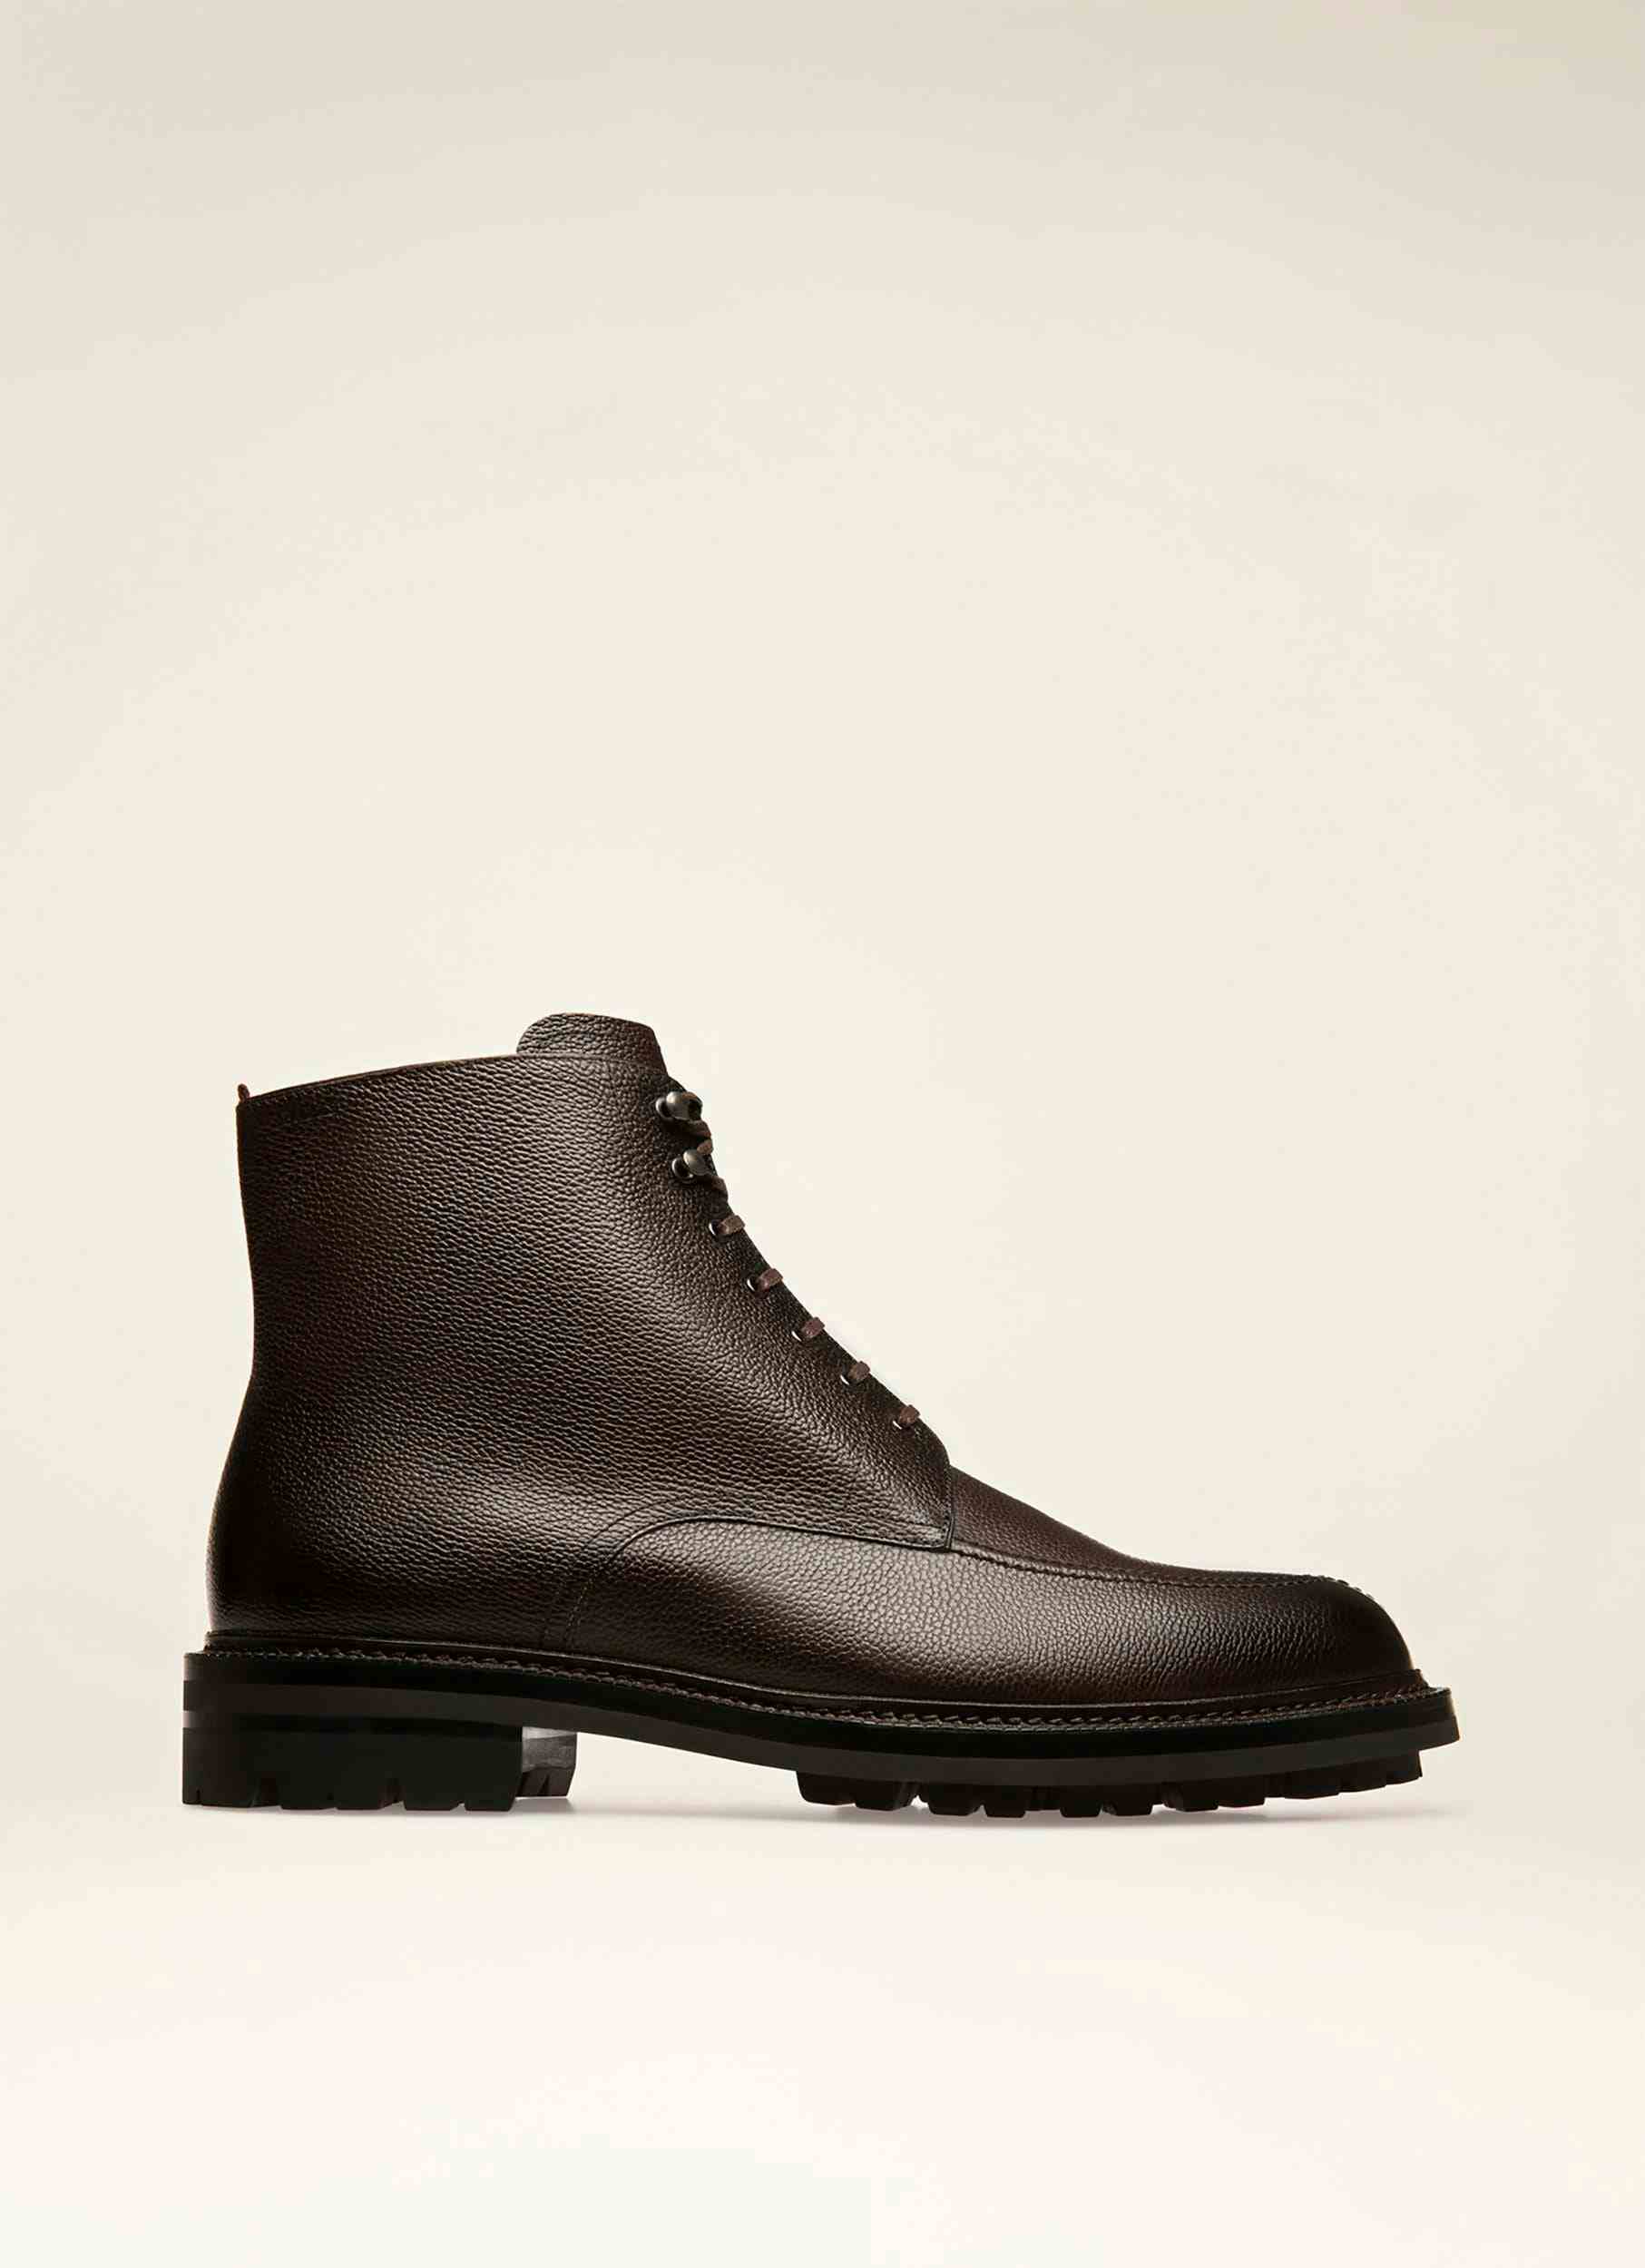 KRIENS Leather Boots In Ebony Brown - Men's - Bally